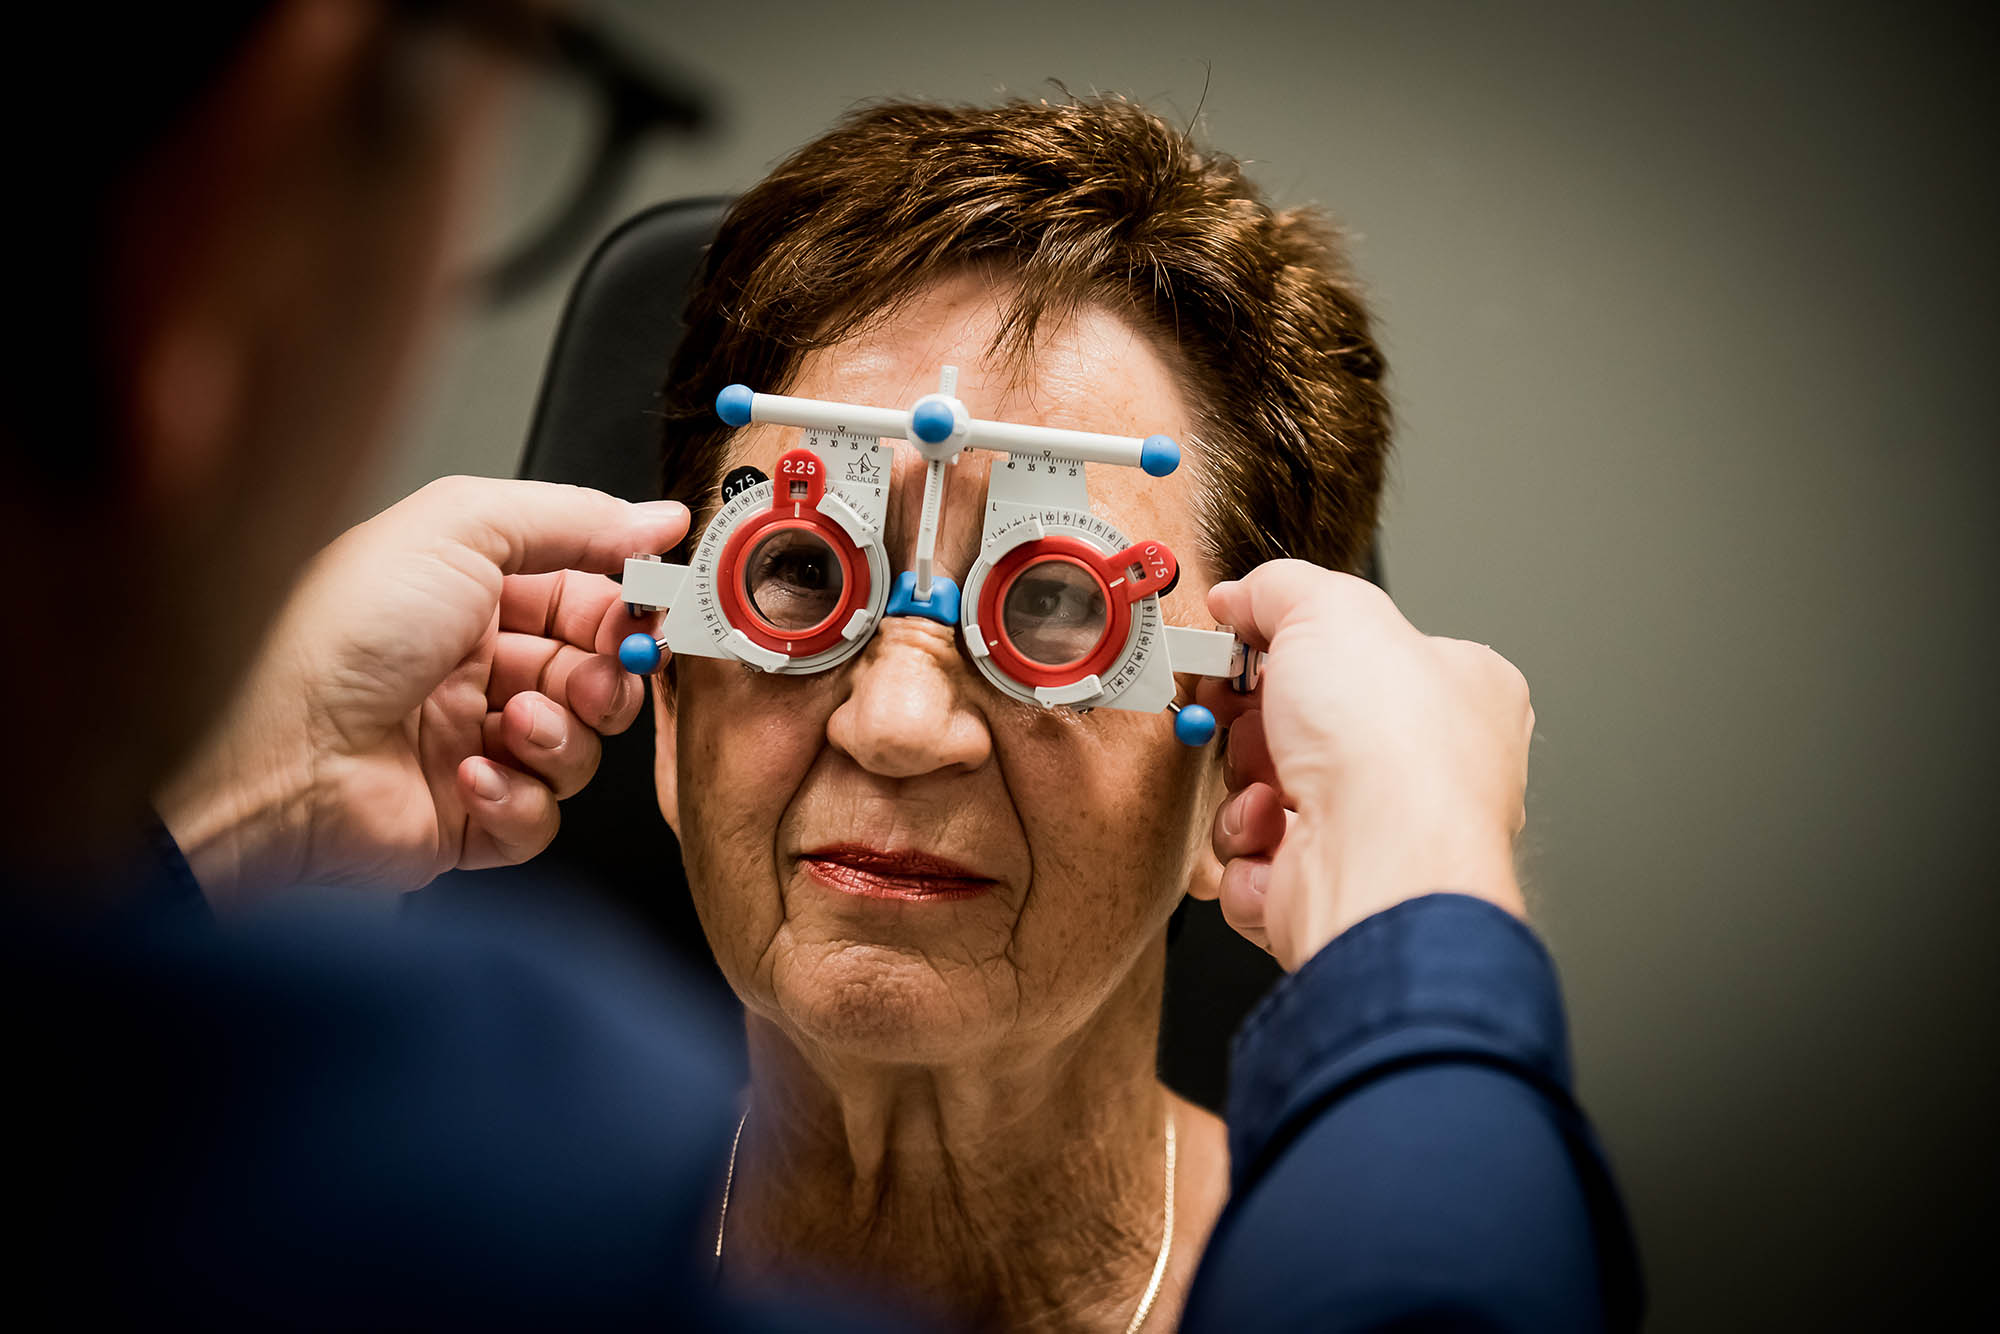 Optiek - Optometrist in Valkenburg. Nauwkeurige oogmeting, nieuwe bril of lenzen of paramedische oogzorg? Opticien Valkenburg? Vanderhallen, als ervaring telt!